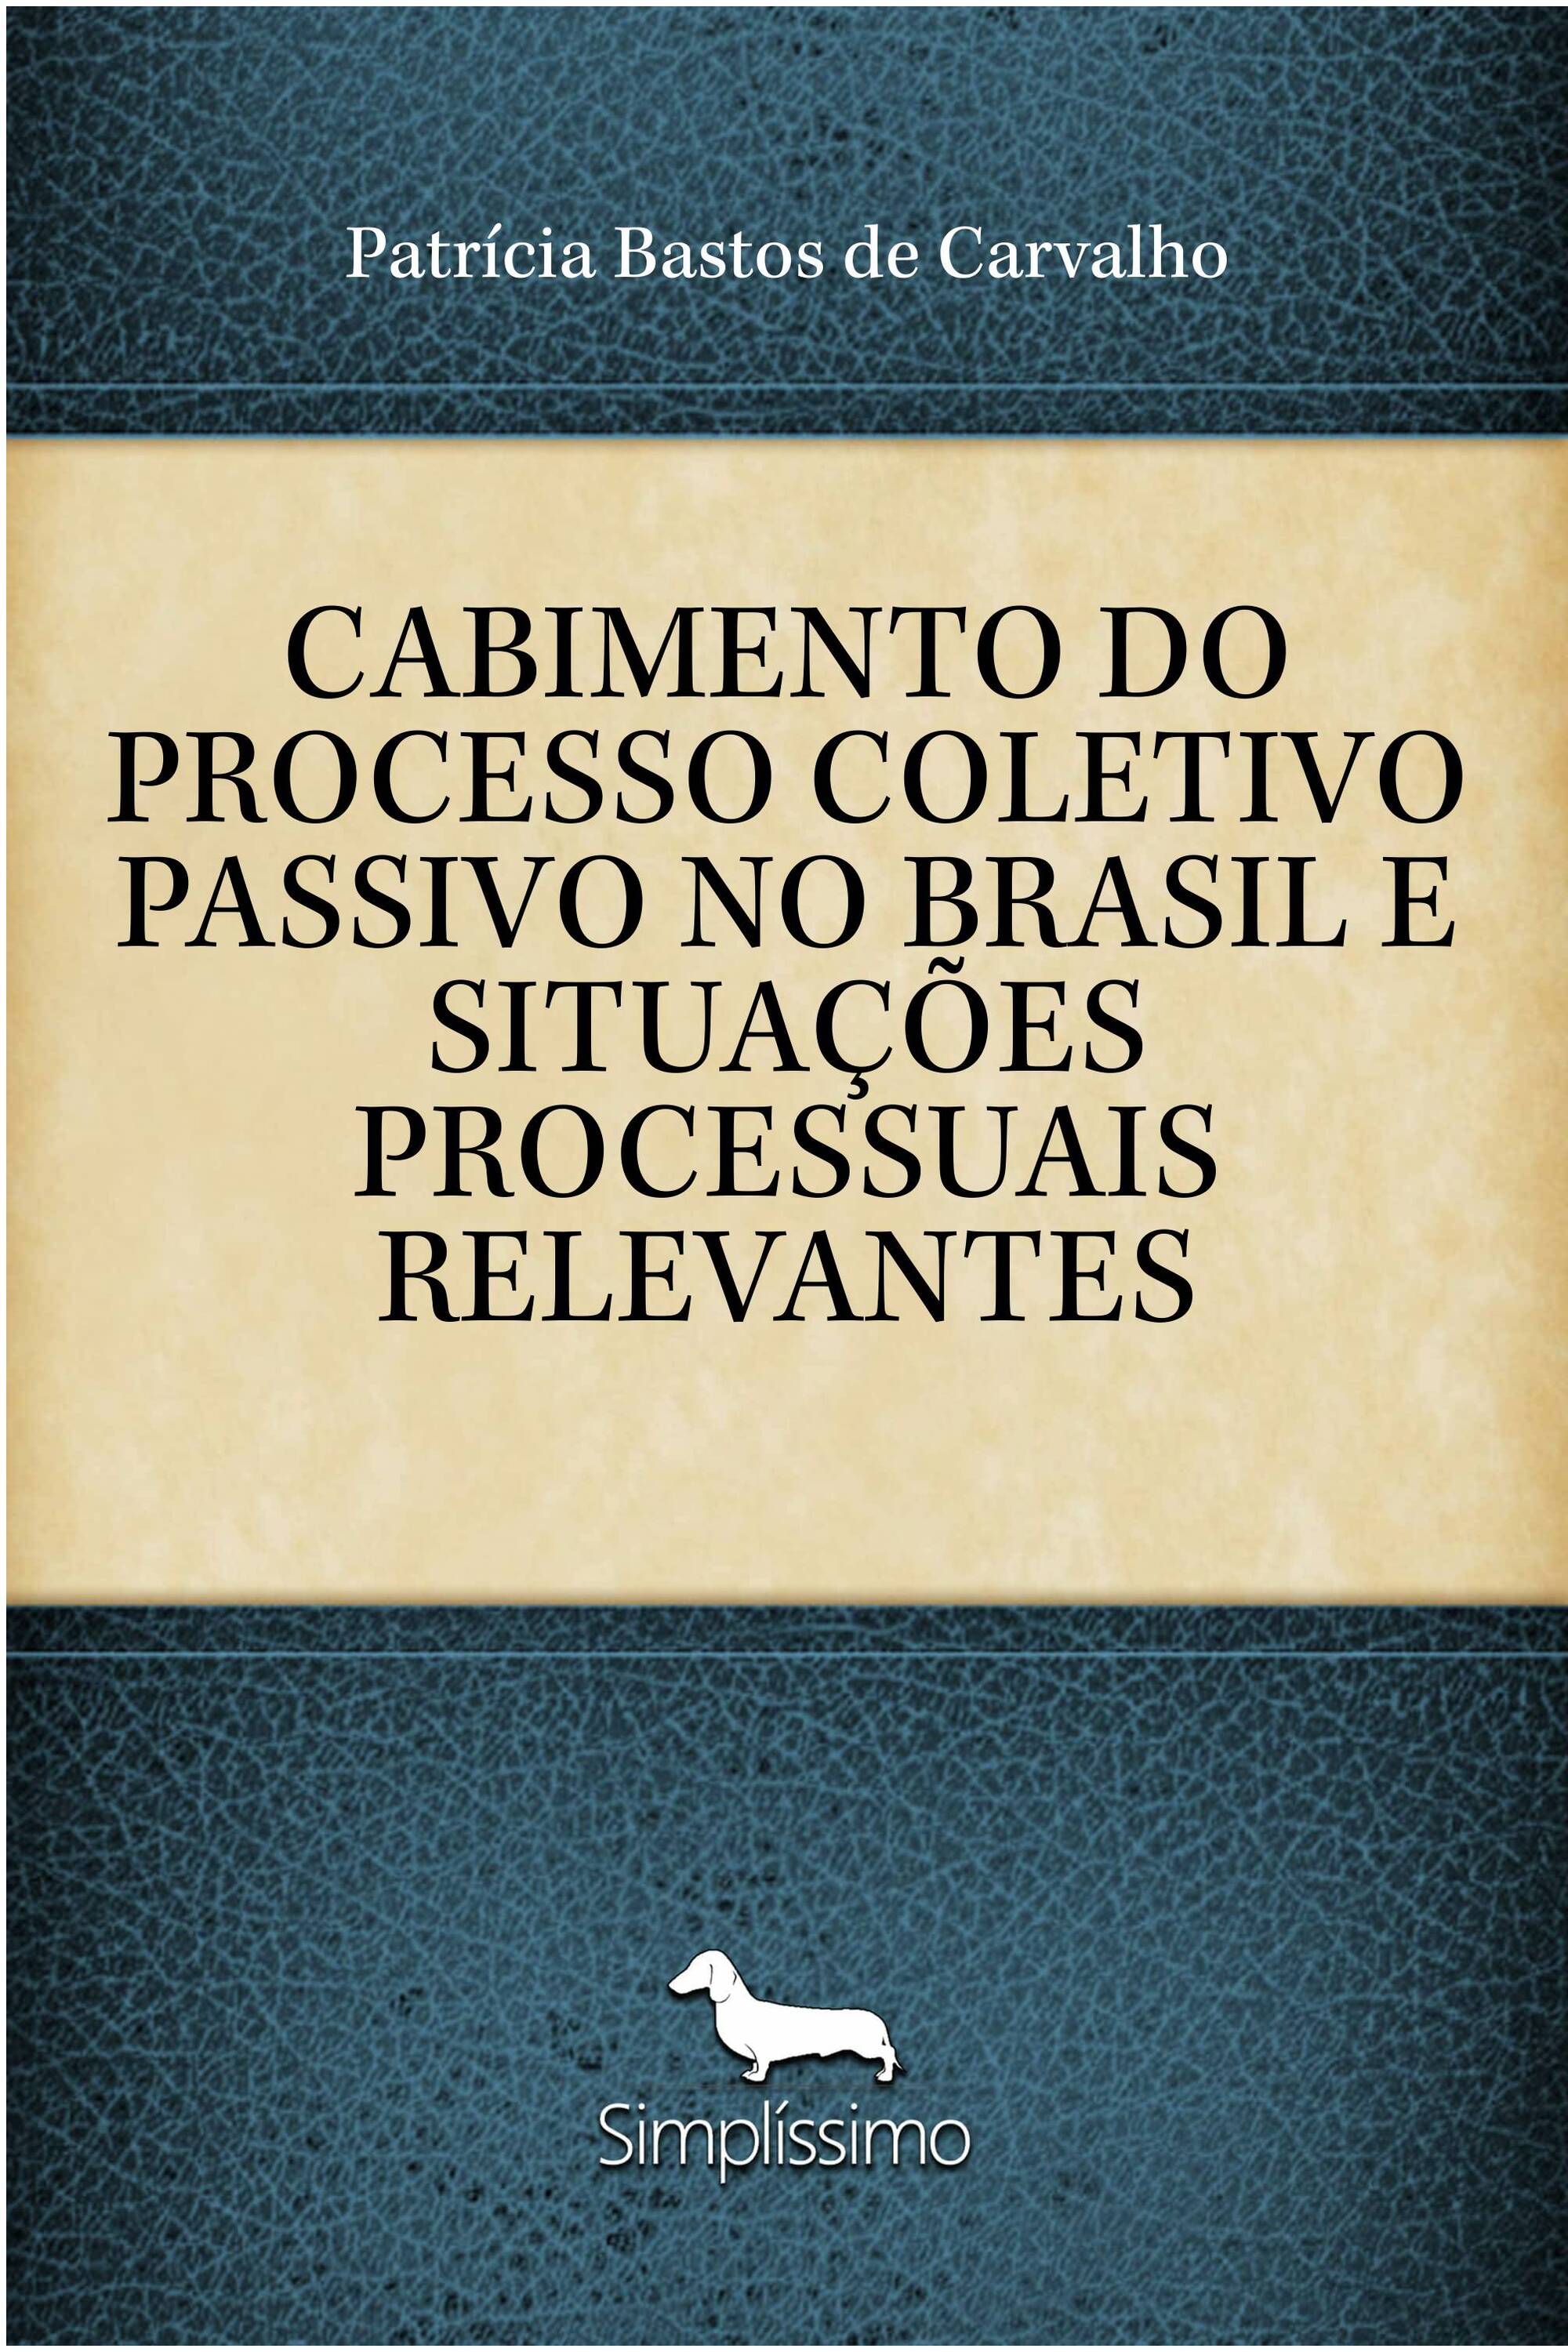 CABIMENTO DO PROCESSO COLETIVO PASSIVO NO BRASIL E SITUAÇÕES PROCESSUAIS RELEVANTES